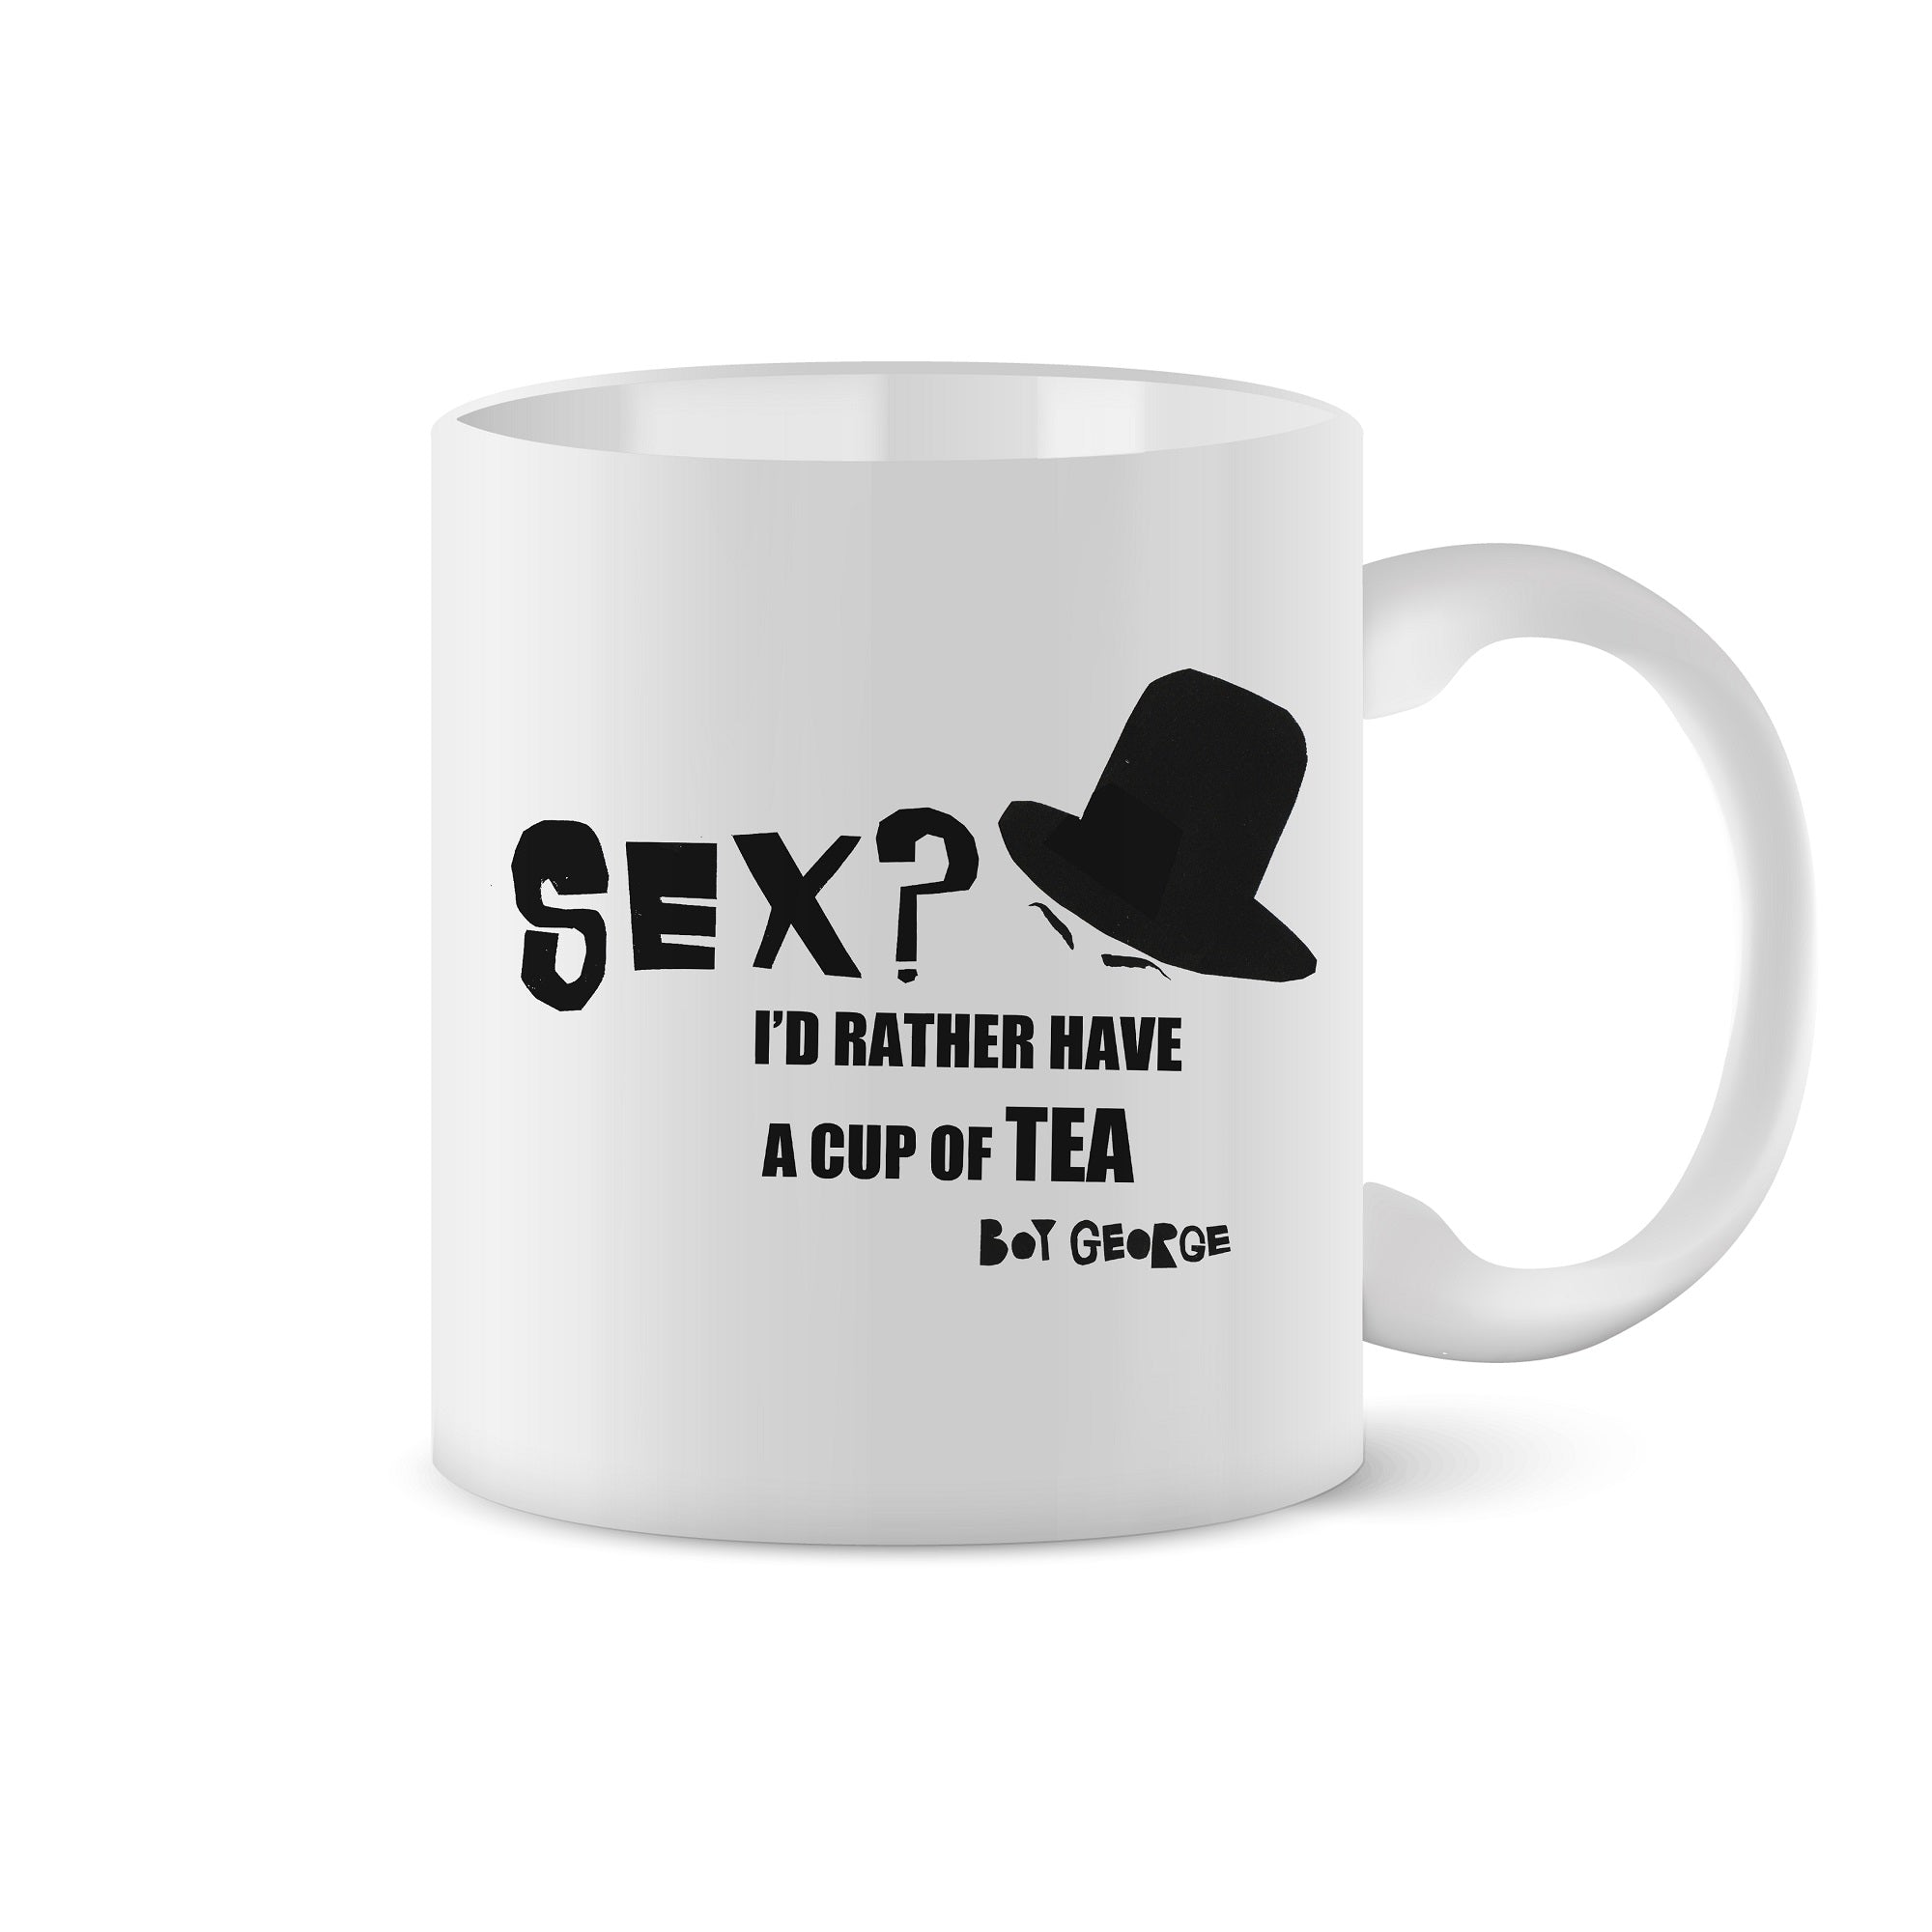 'Sex? I'd Rather Have A Cup Of Tea' Mug